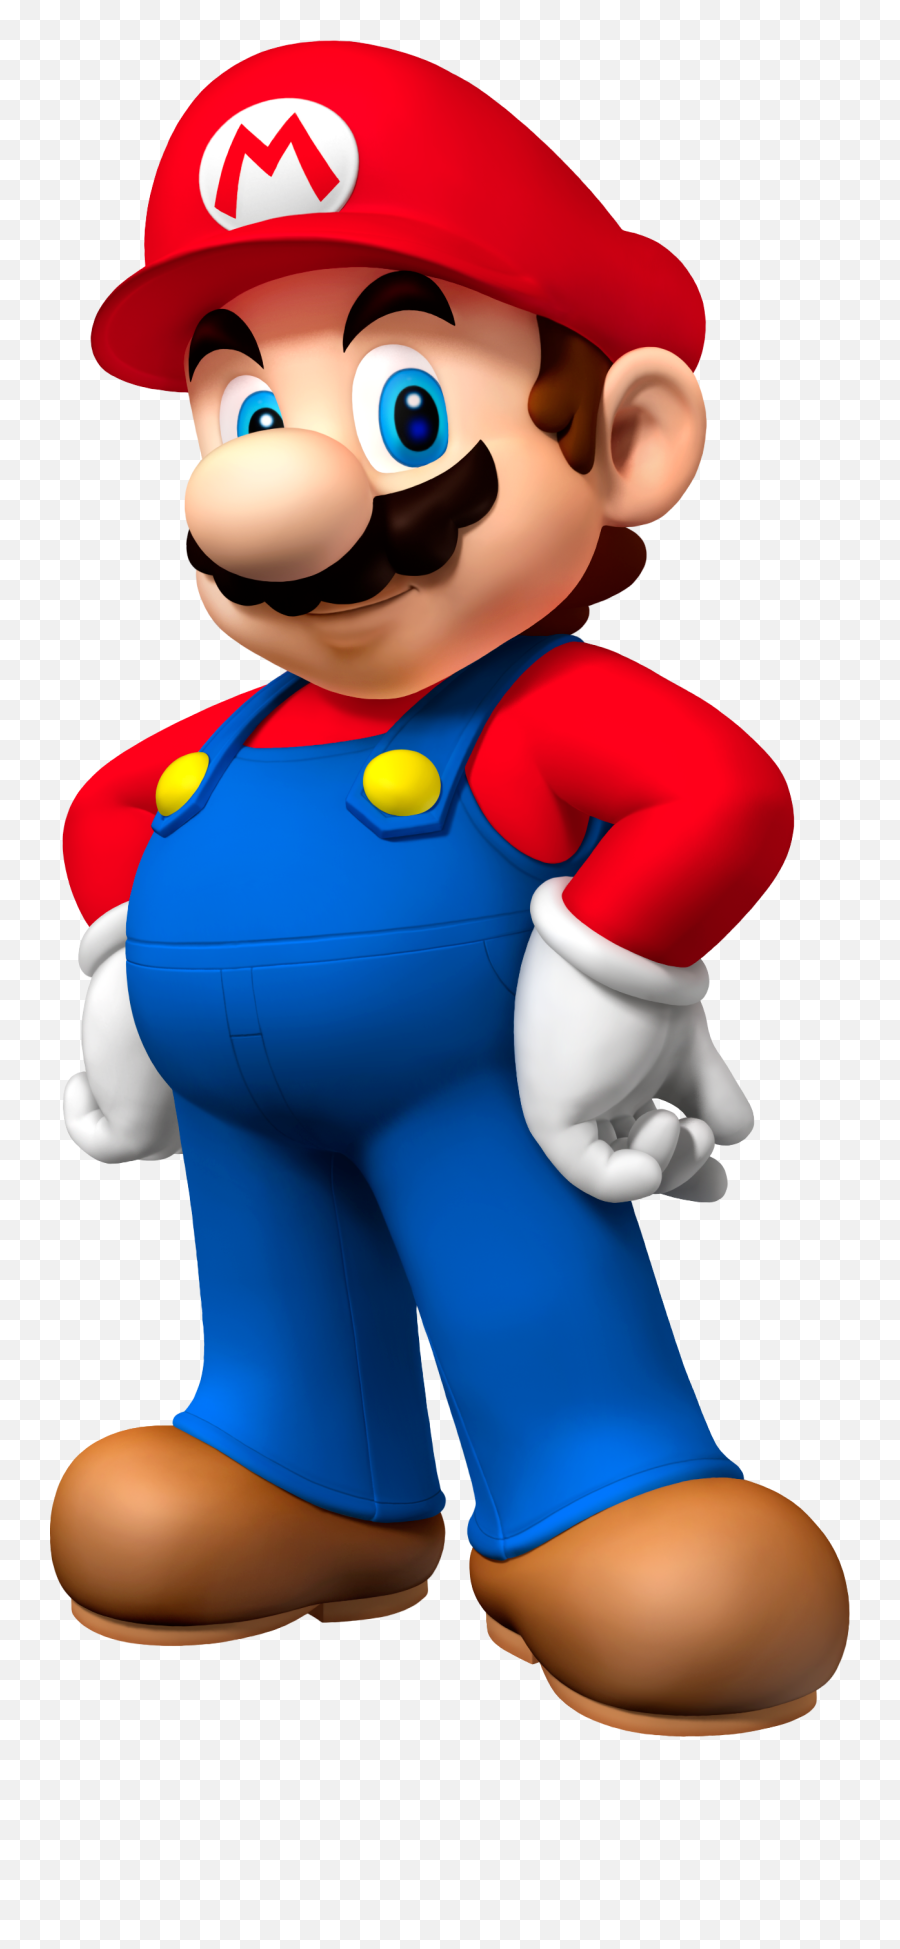 Super Mario Png Image - Mario Png,Mario Transparent Background